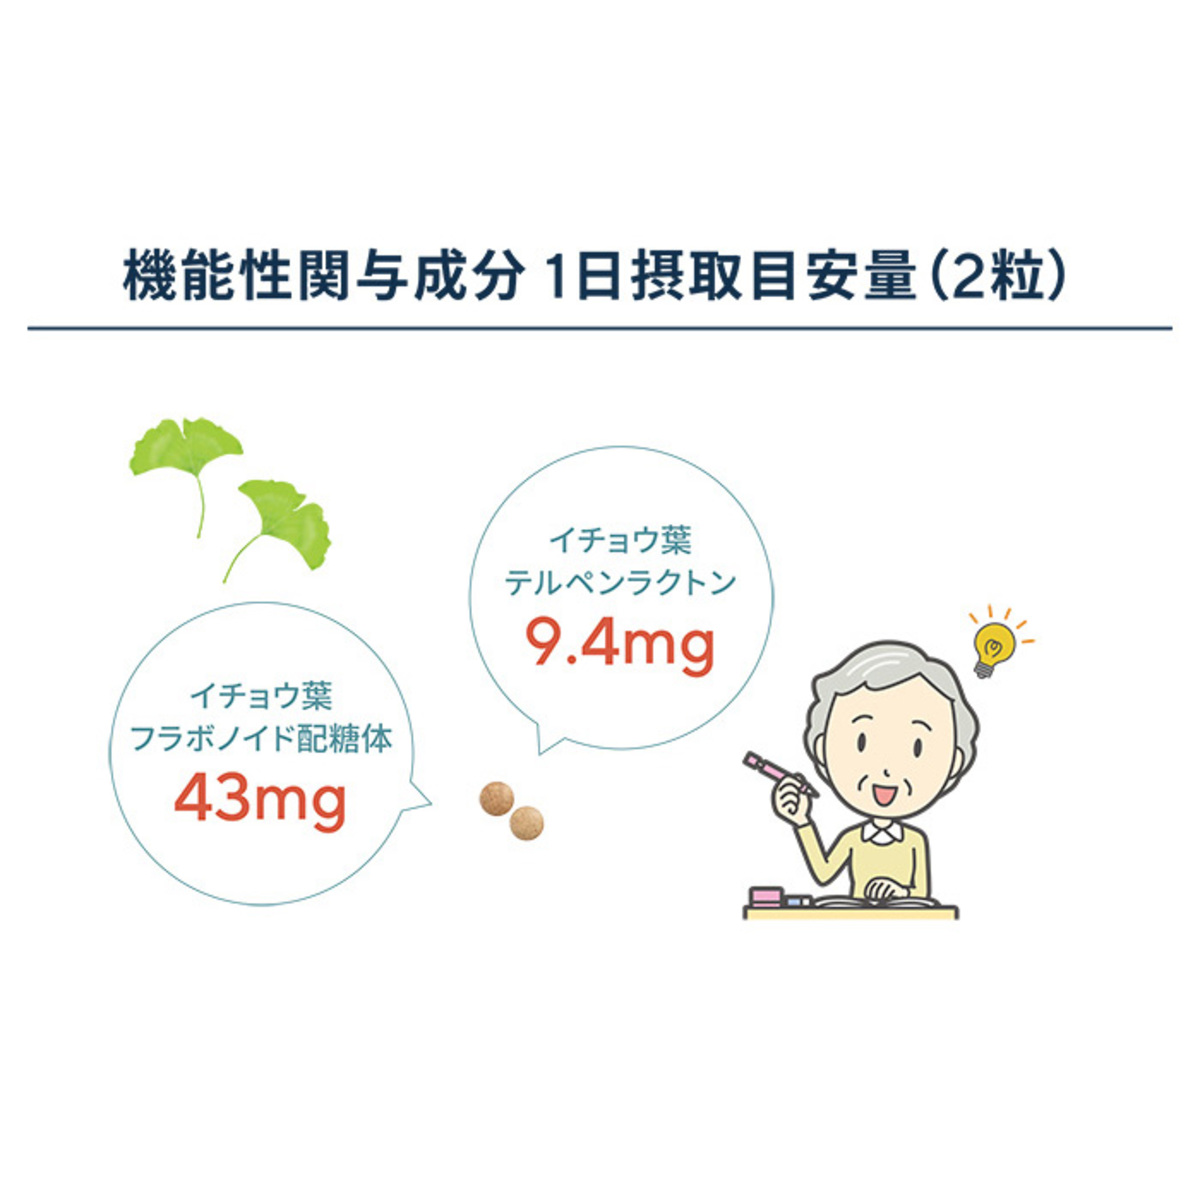 サプリ生活プレミアム「イチョウ葉＋」機能性表示食品 サプリ生活 - QVC.jp